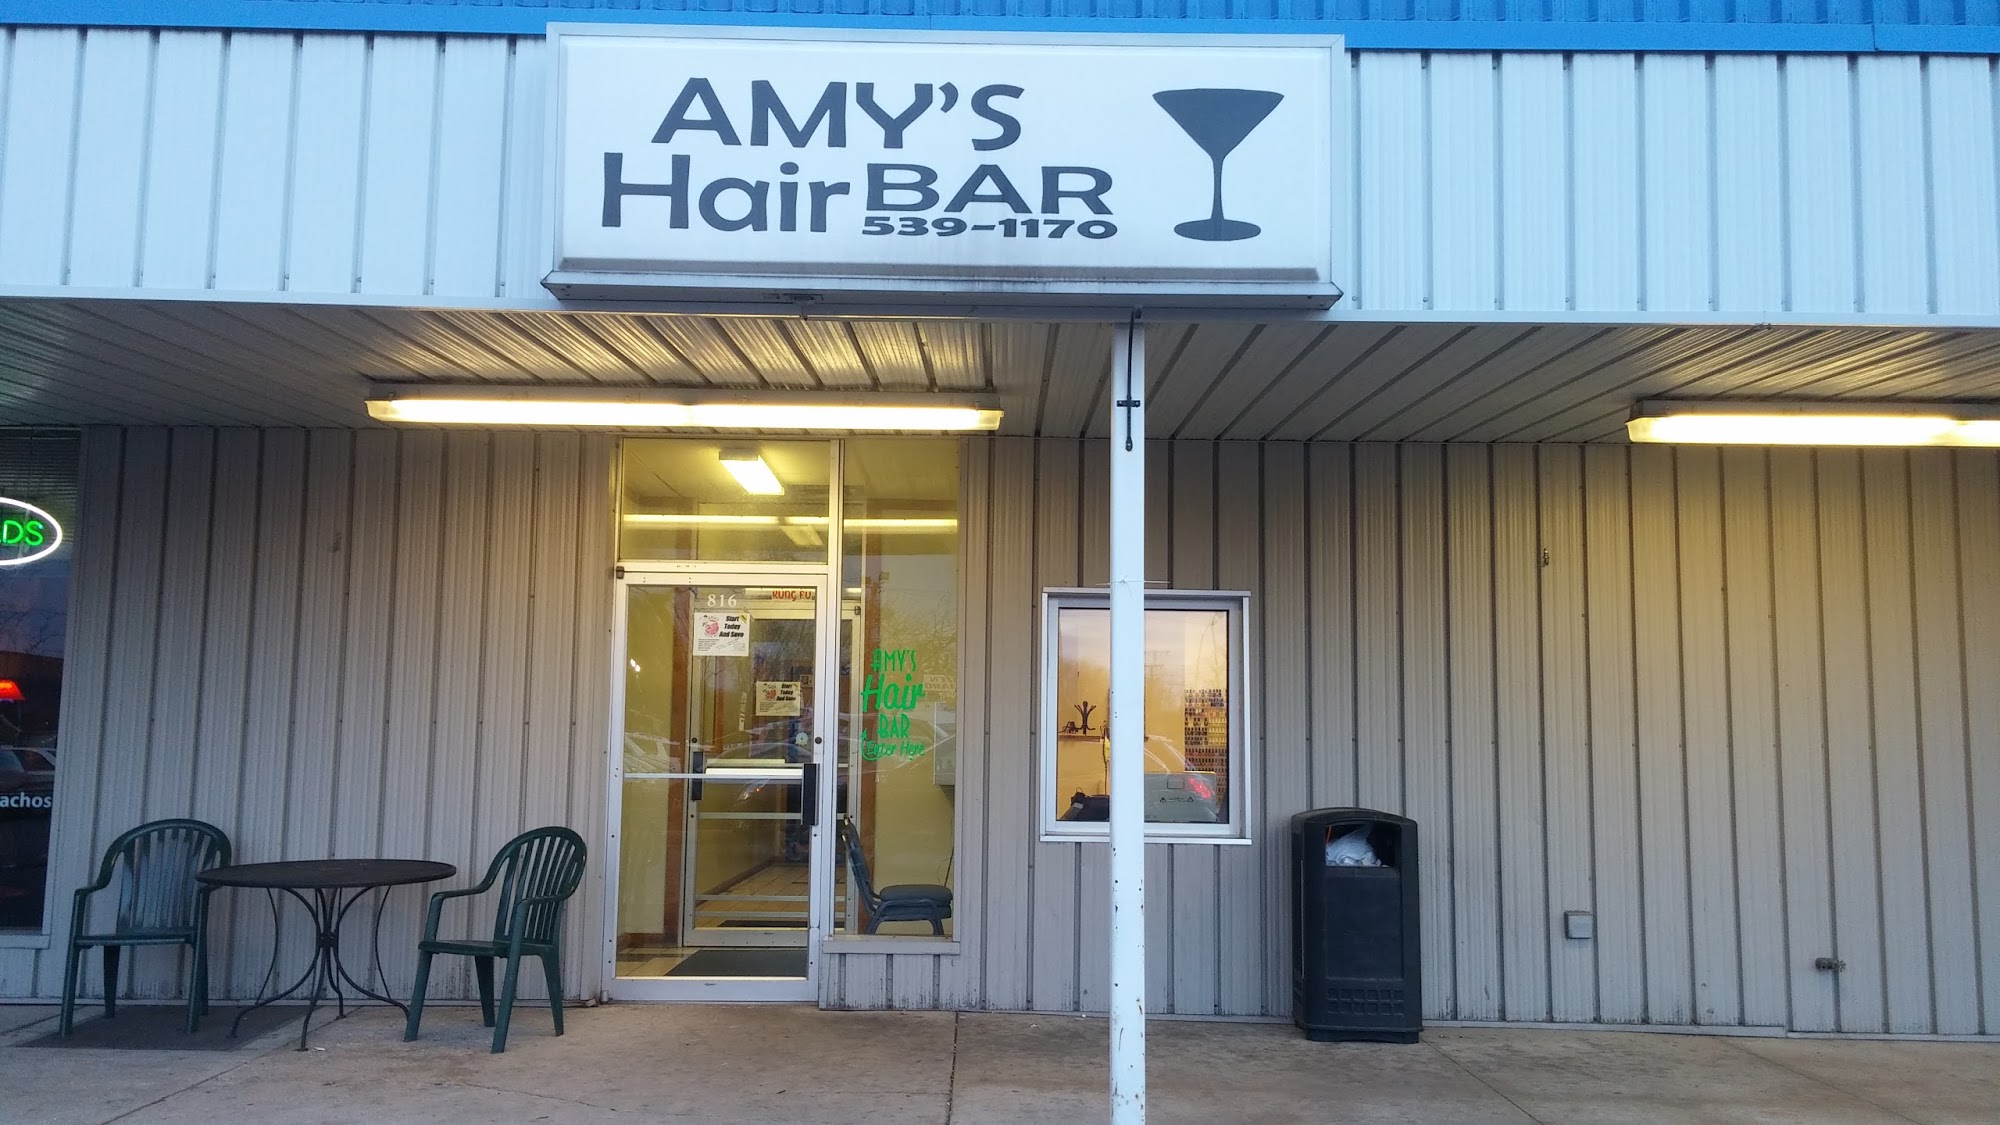 Amy's Hair Bar